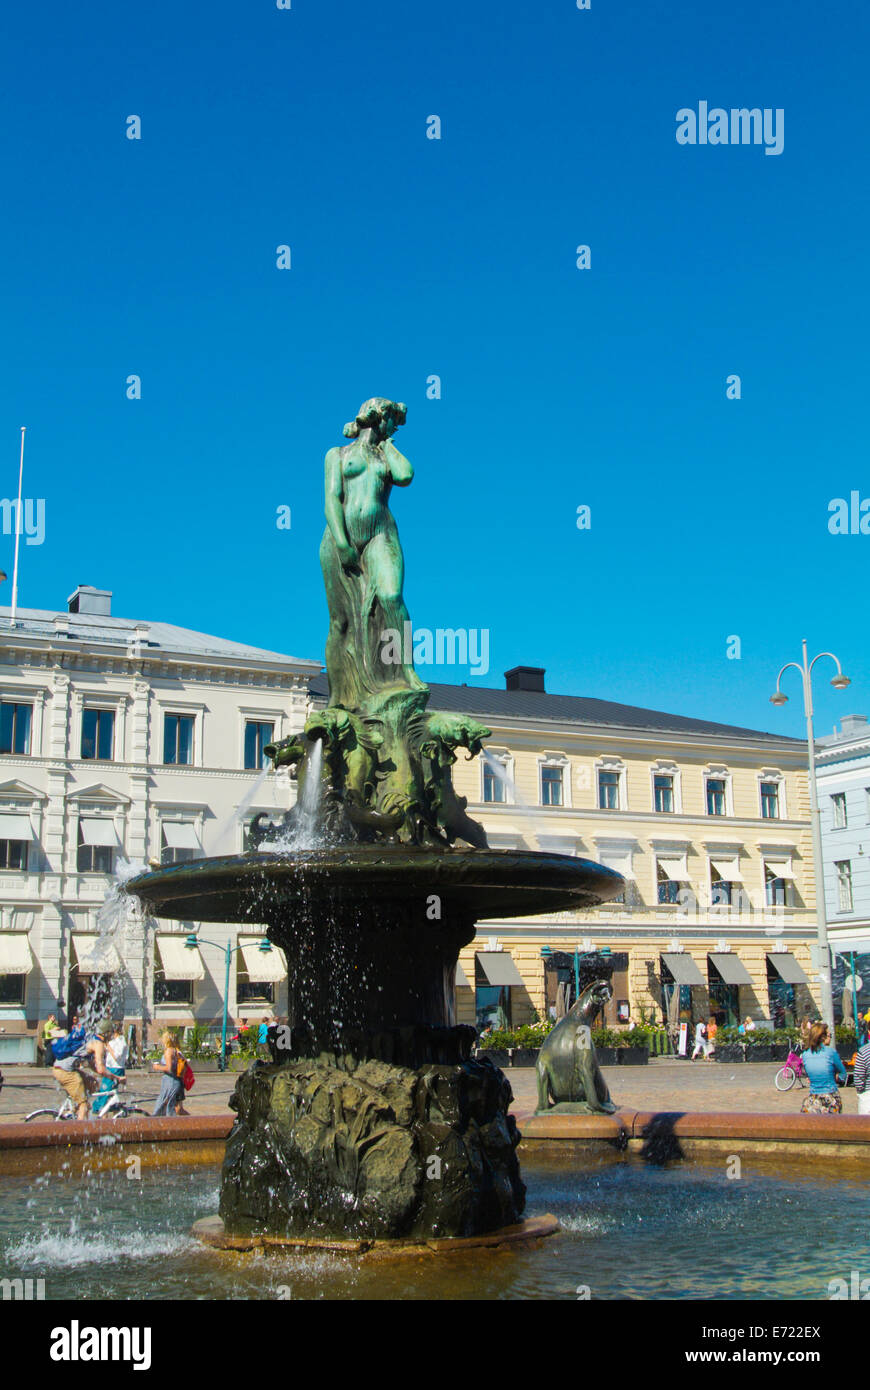 Havis Amanda Mermaid statua, da Ville Vallgren, Kauppatori, la piazza del mercato principale e il centro di Helsinki, Finlandia, Europa Foto Stock